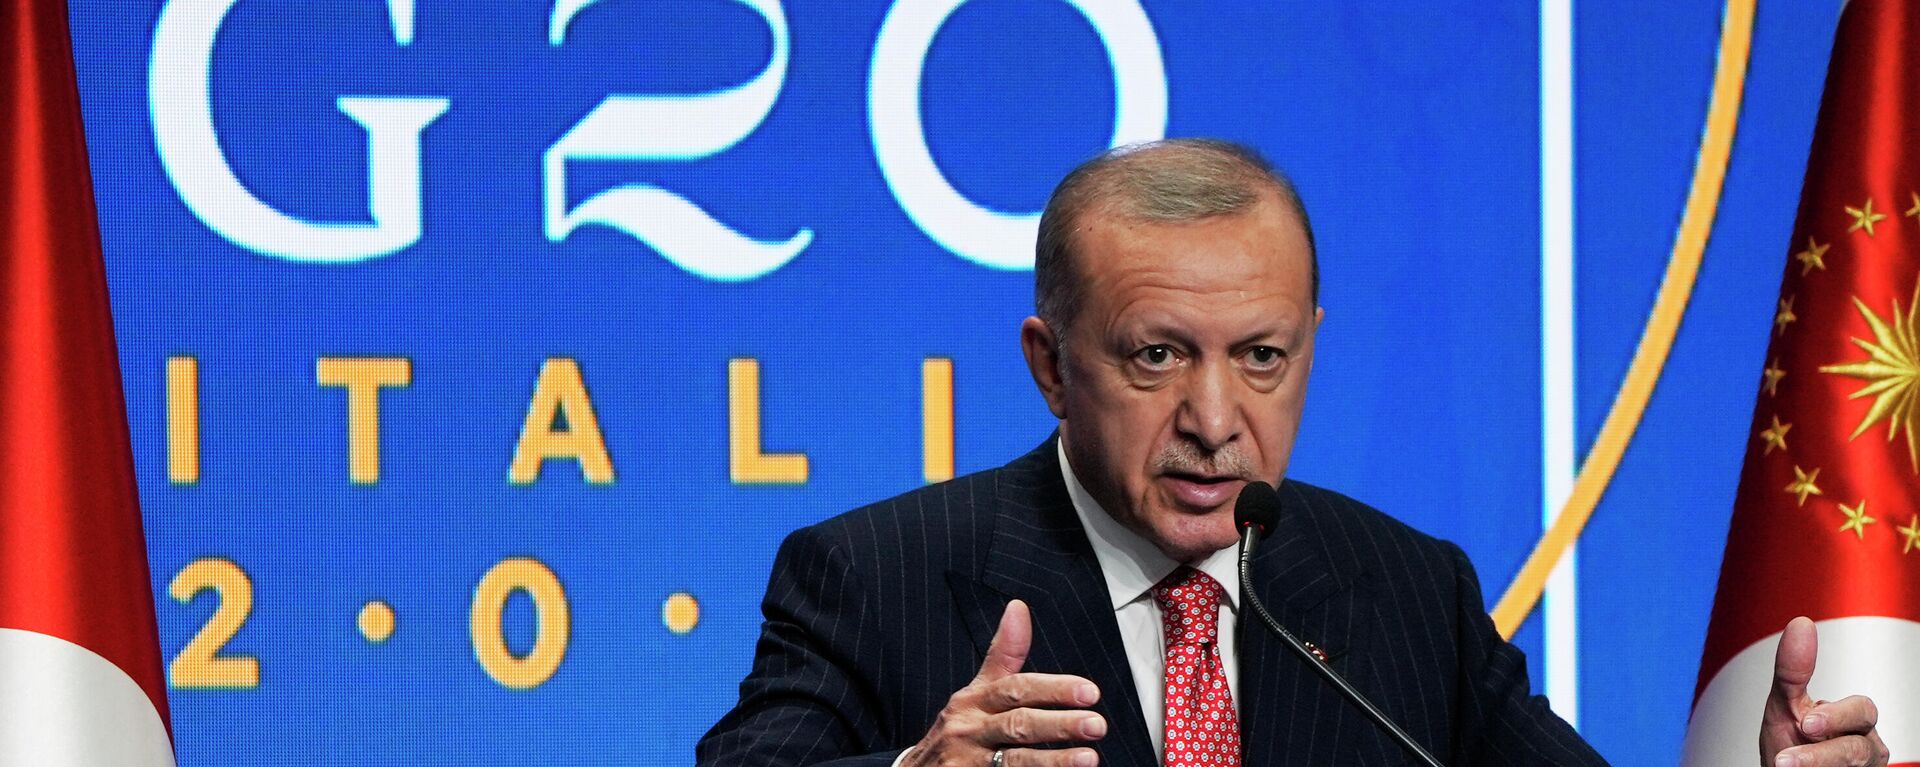 Председник Турске Реџеп Тајип Ердоган на Самиту Г20 у Риму - Sputnik Србија, 1920, 31.10.2021